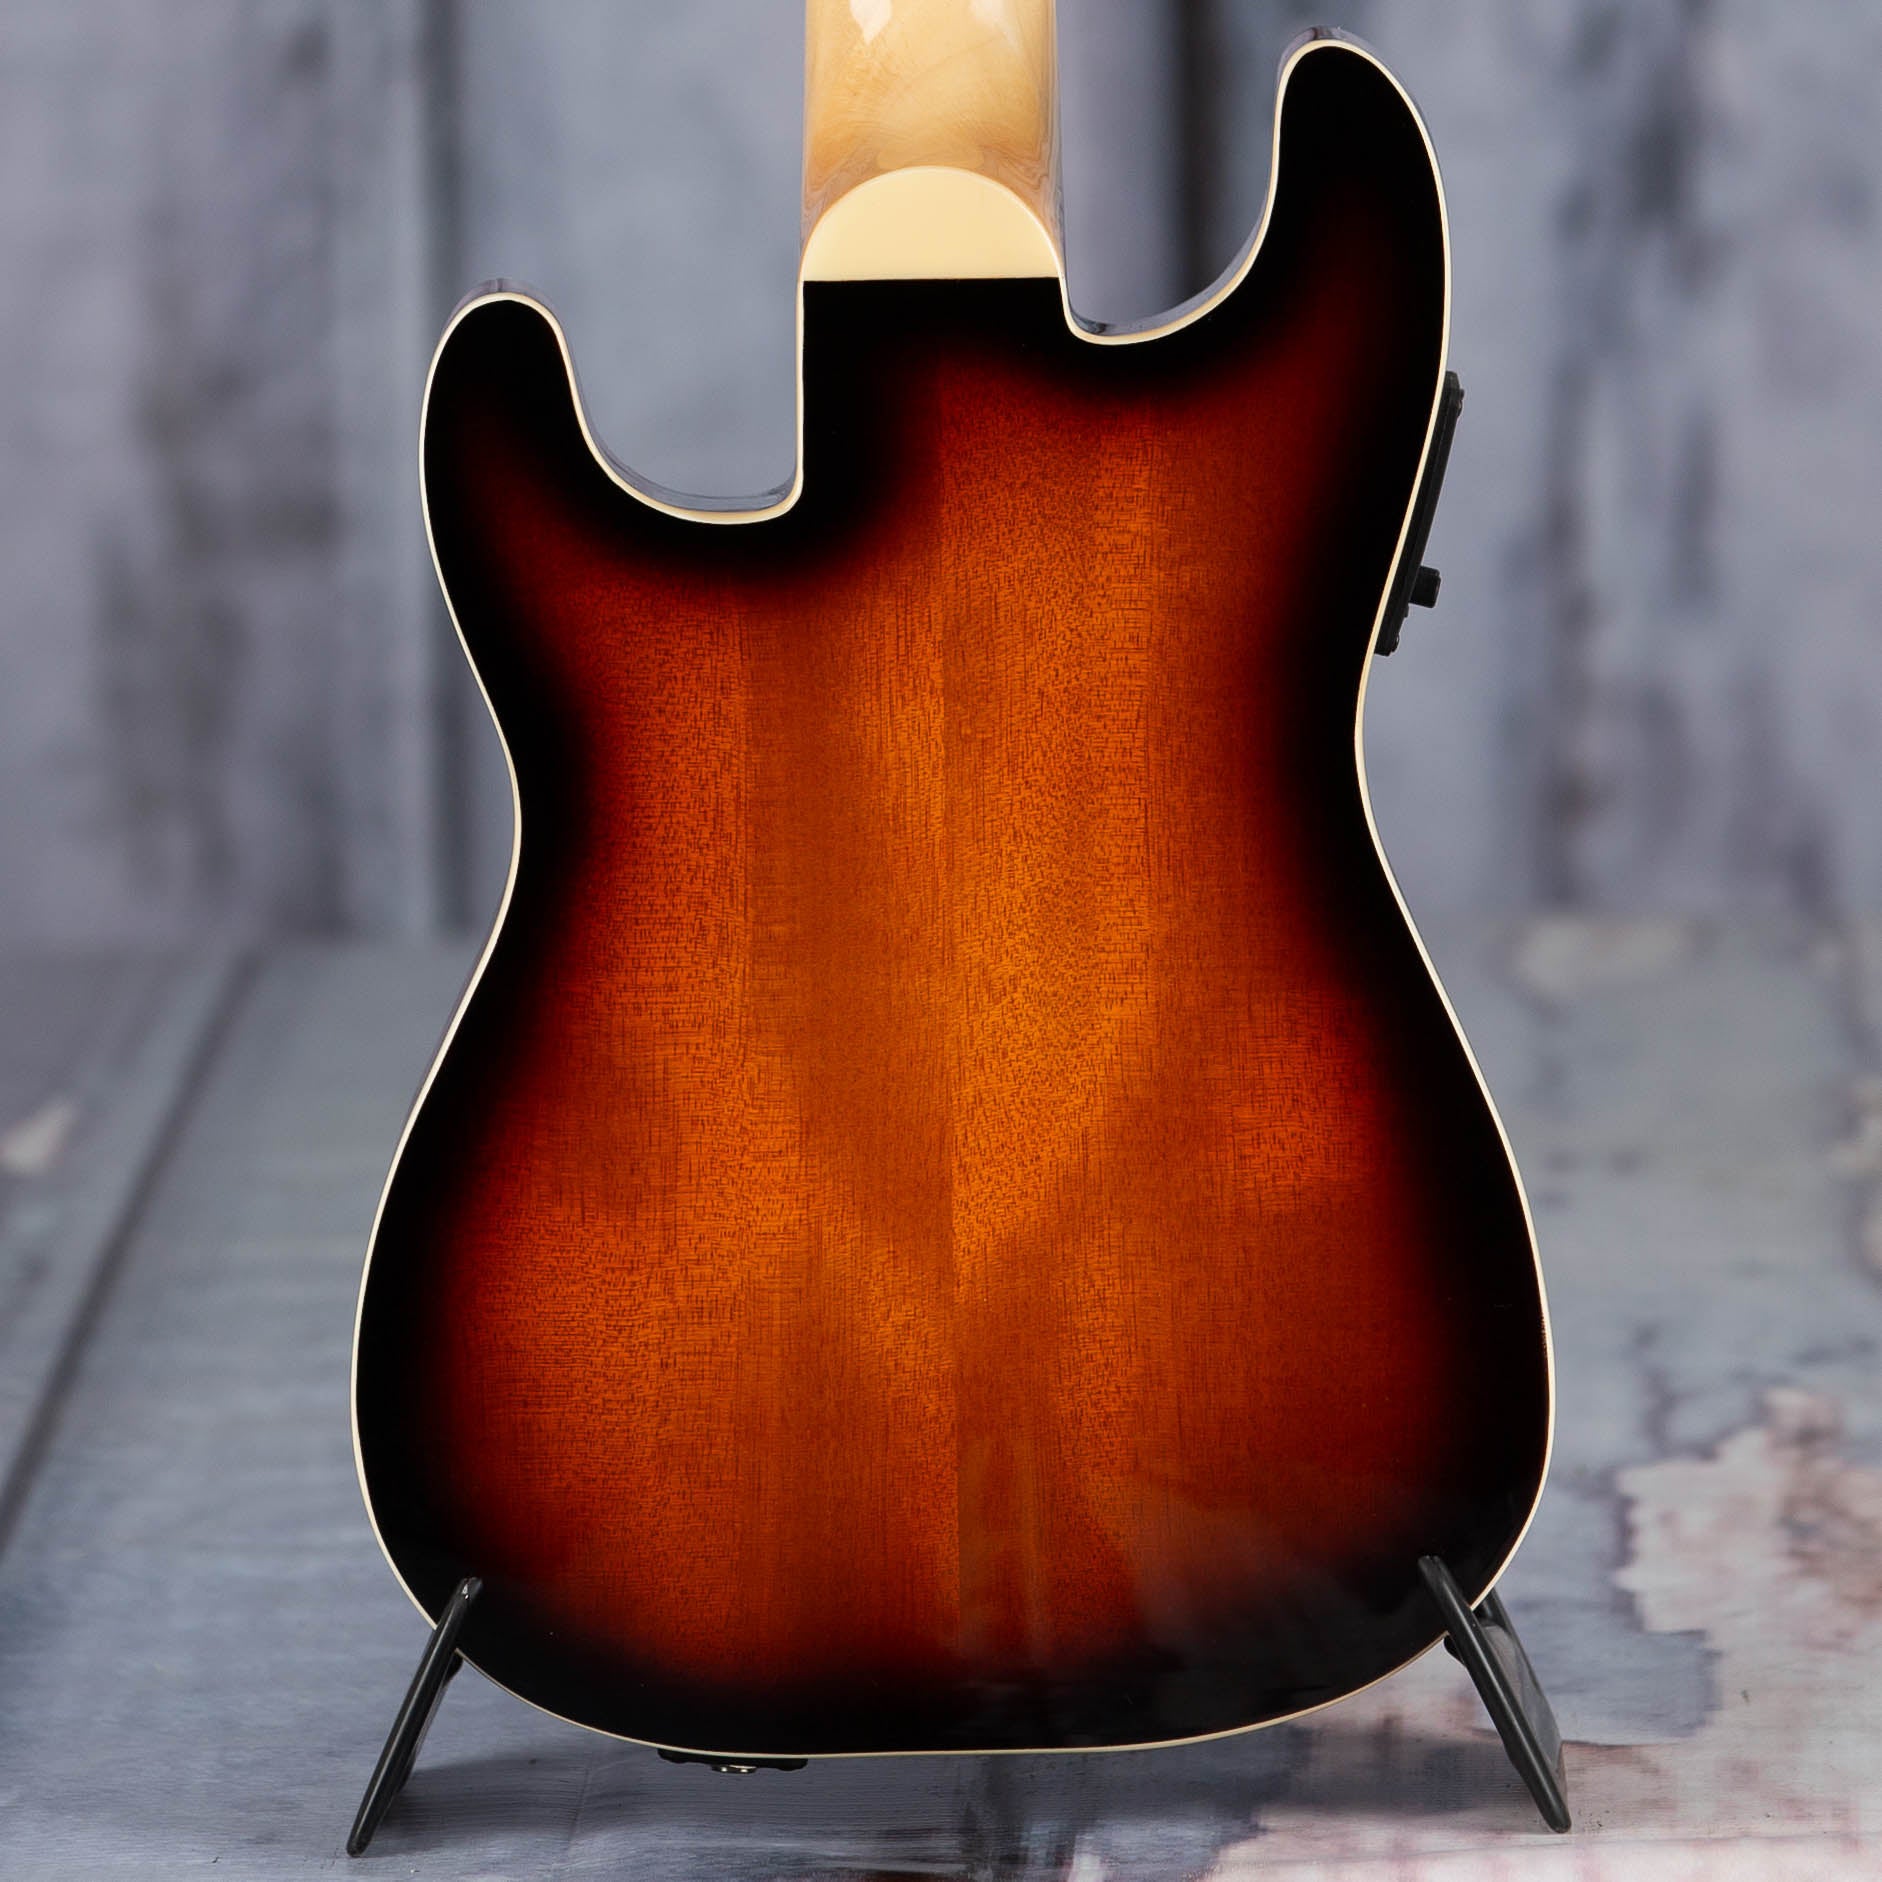 Fender Fullterton Strat Acoustic/Electric Ukulele, Sunburst, back closeup